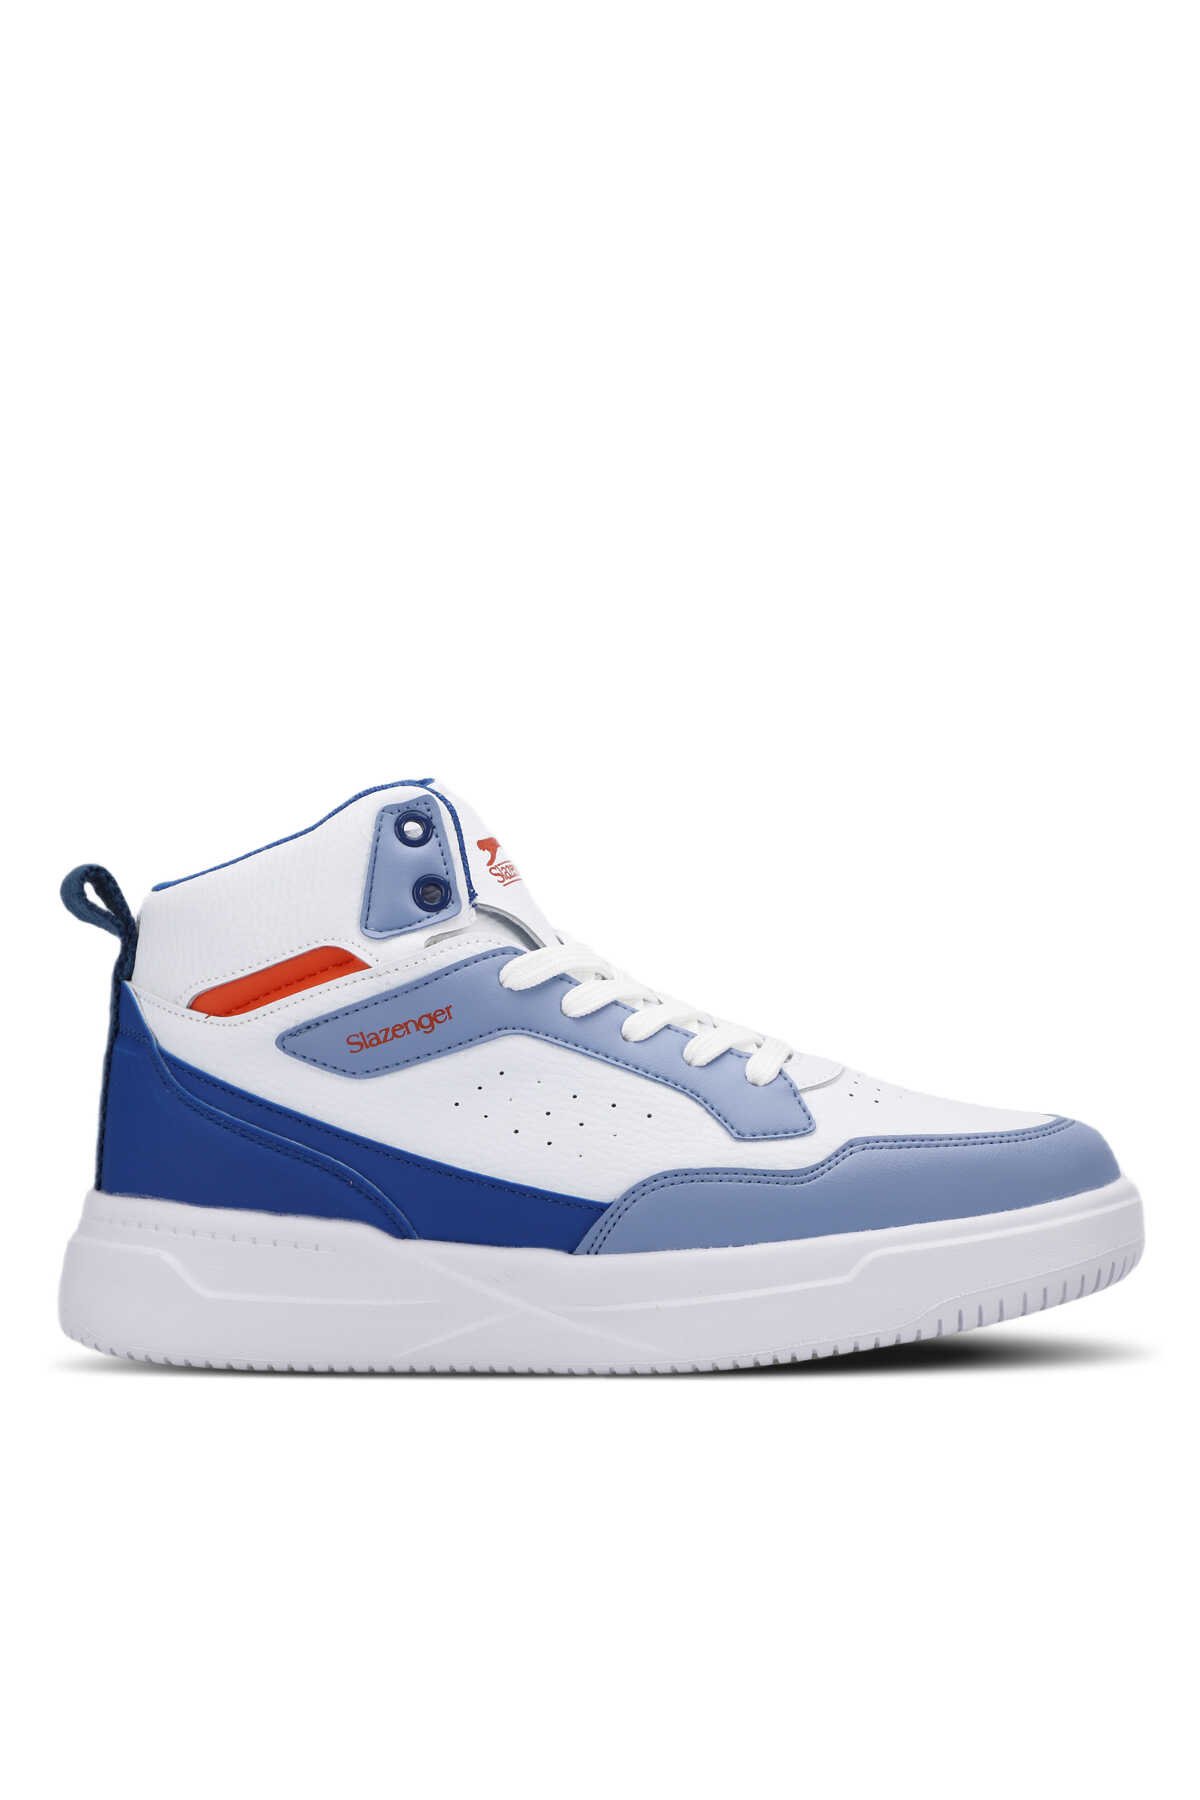 Slazenger - Slazenger LALI Sneaker Erkek Ayakkabı Beyaz / Saks Mavi